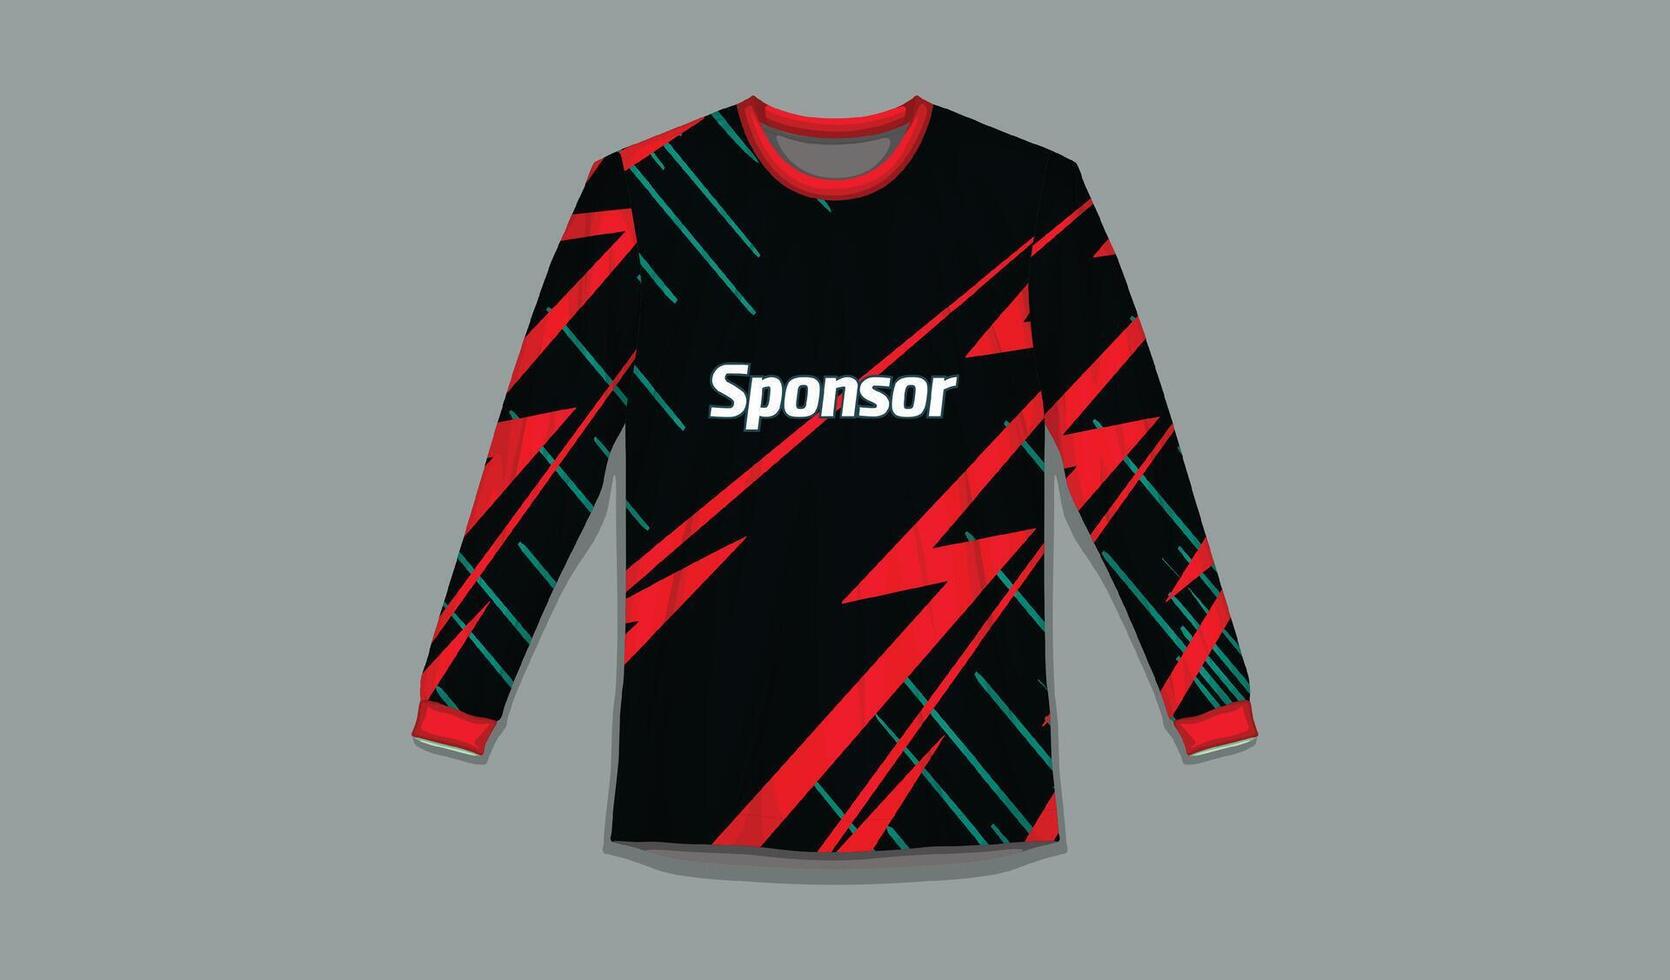 lang mouw t-shirt sport- structuur achtergrond voor voetbal Jersey bergafwaarts wielersport Amerikaans voetbal gaming vector